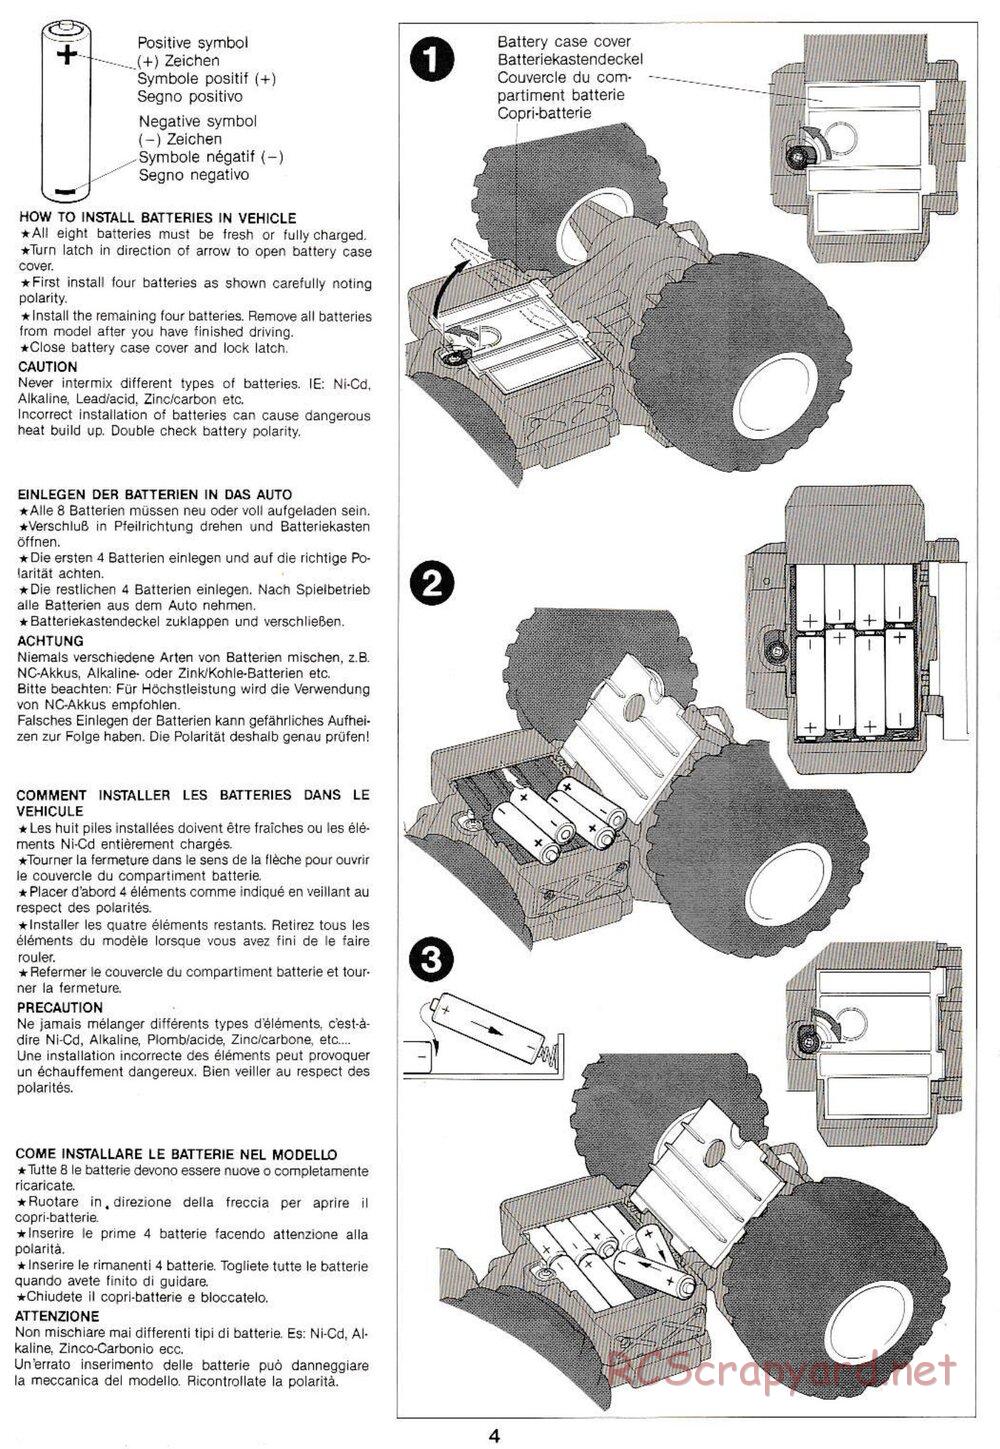 Tamiya - Monster Beetle QD Chassis - Manual - Page 4